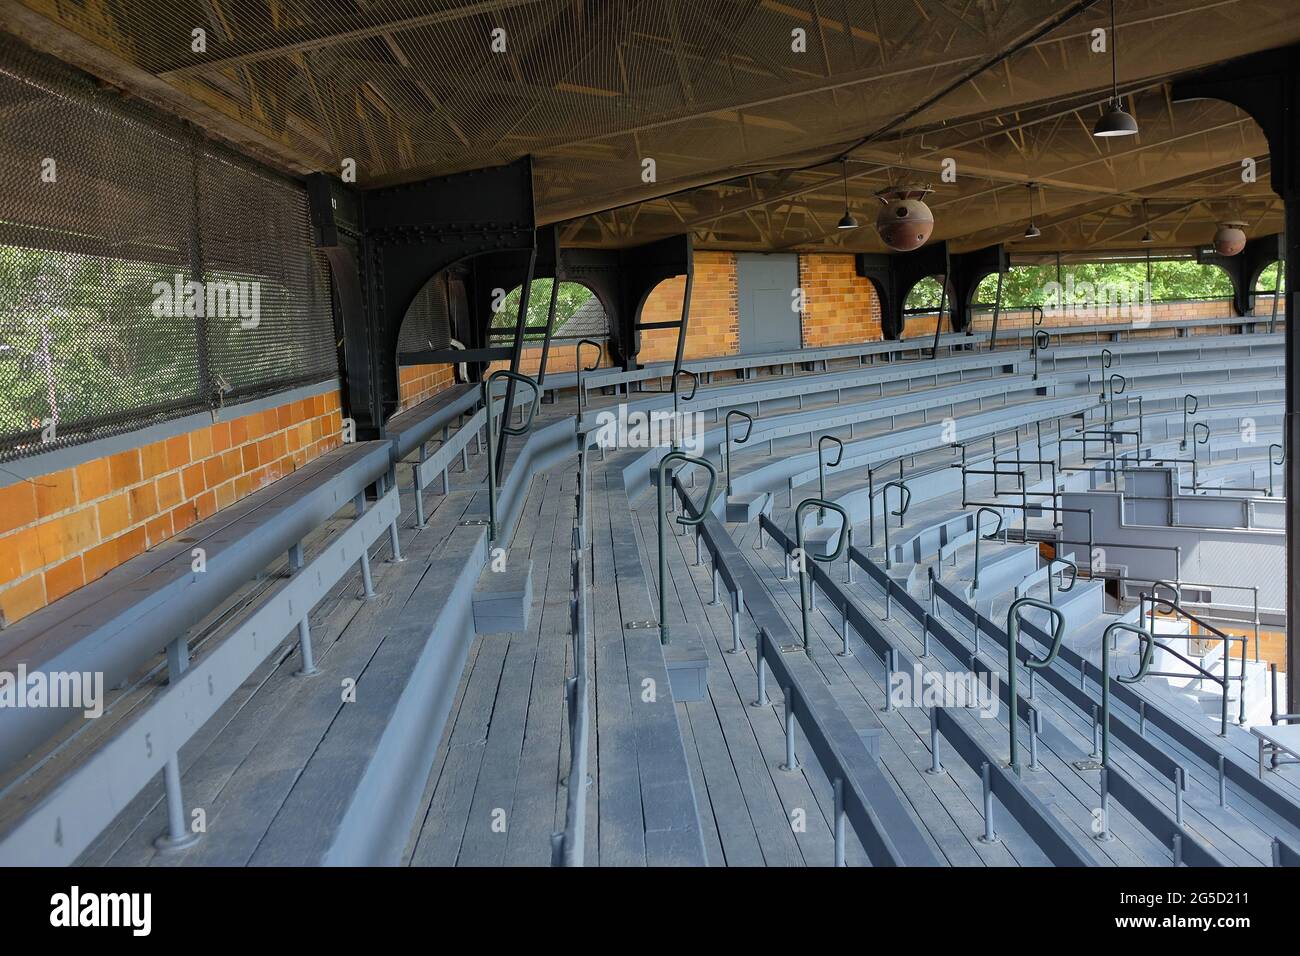 COOPERSTOWN, NEW YORK - 21 GIUGNO 2021: Posti a sedere presso la tribuna del Doubleday Field, parte della National Baseball Hall of Fame and Museum. Foto Stock